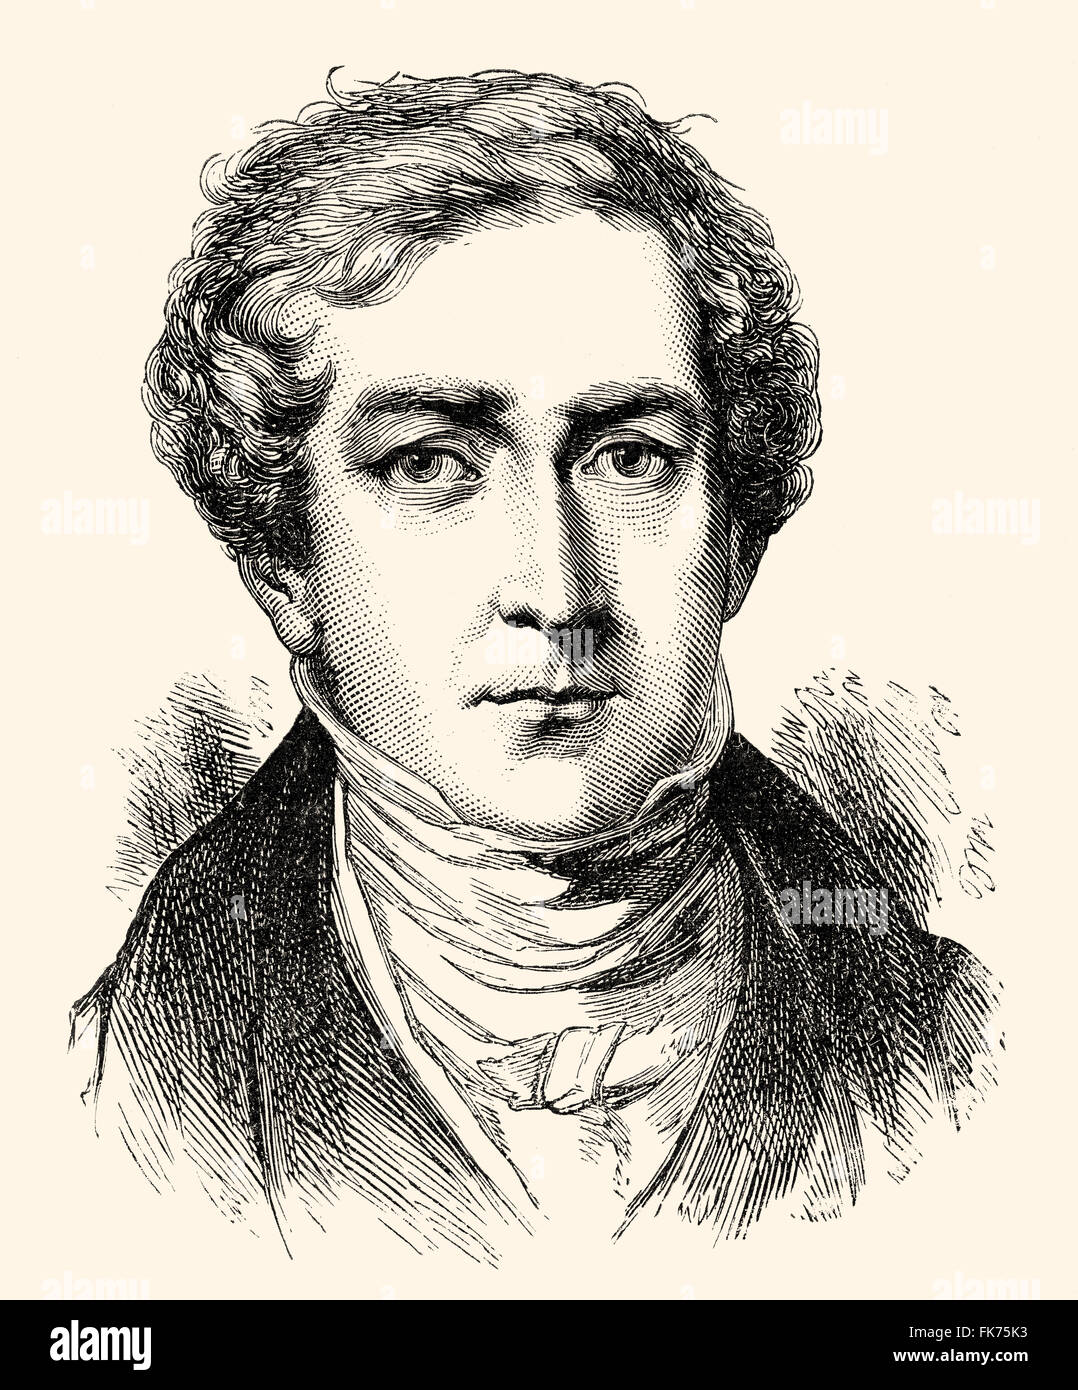 Sir Robert Peel, 1788 - 1850, 2ème baronet de Peel Clanfield, un homme politique britannique, premier ministre et fondateur de l'Conservativ Banque D'Images